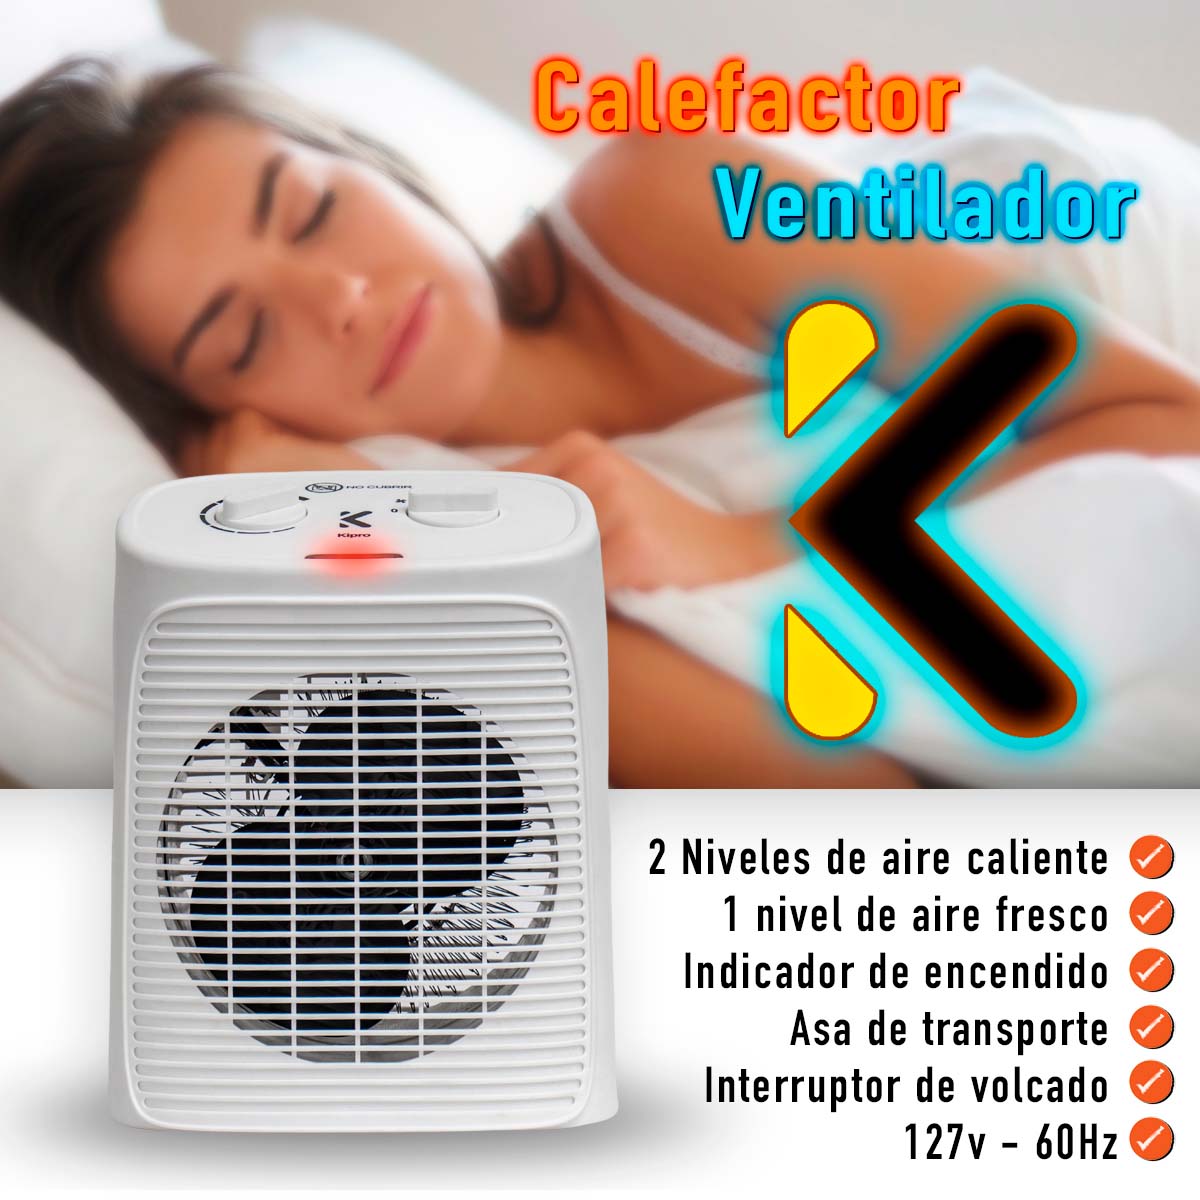 Ventilador / Calefactor – Tienda Kipro